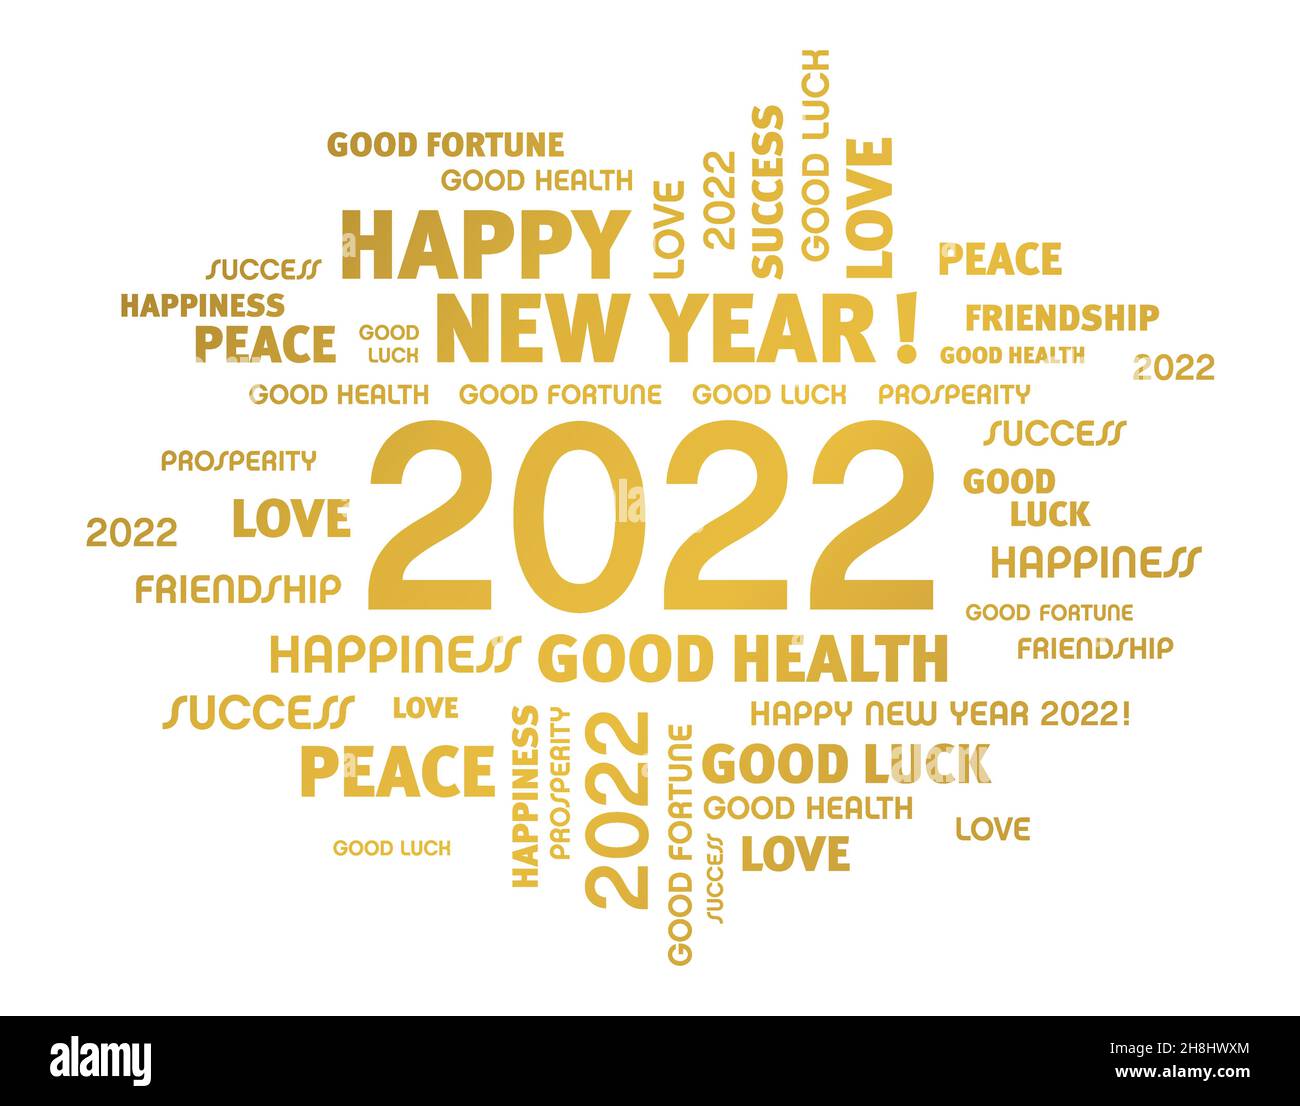 Grußworte zum Neujahrsdatum 2022, goldfarben, isoliert auf weiß. Wortwolke wünscht Karte. Stock Vektor